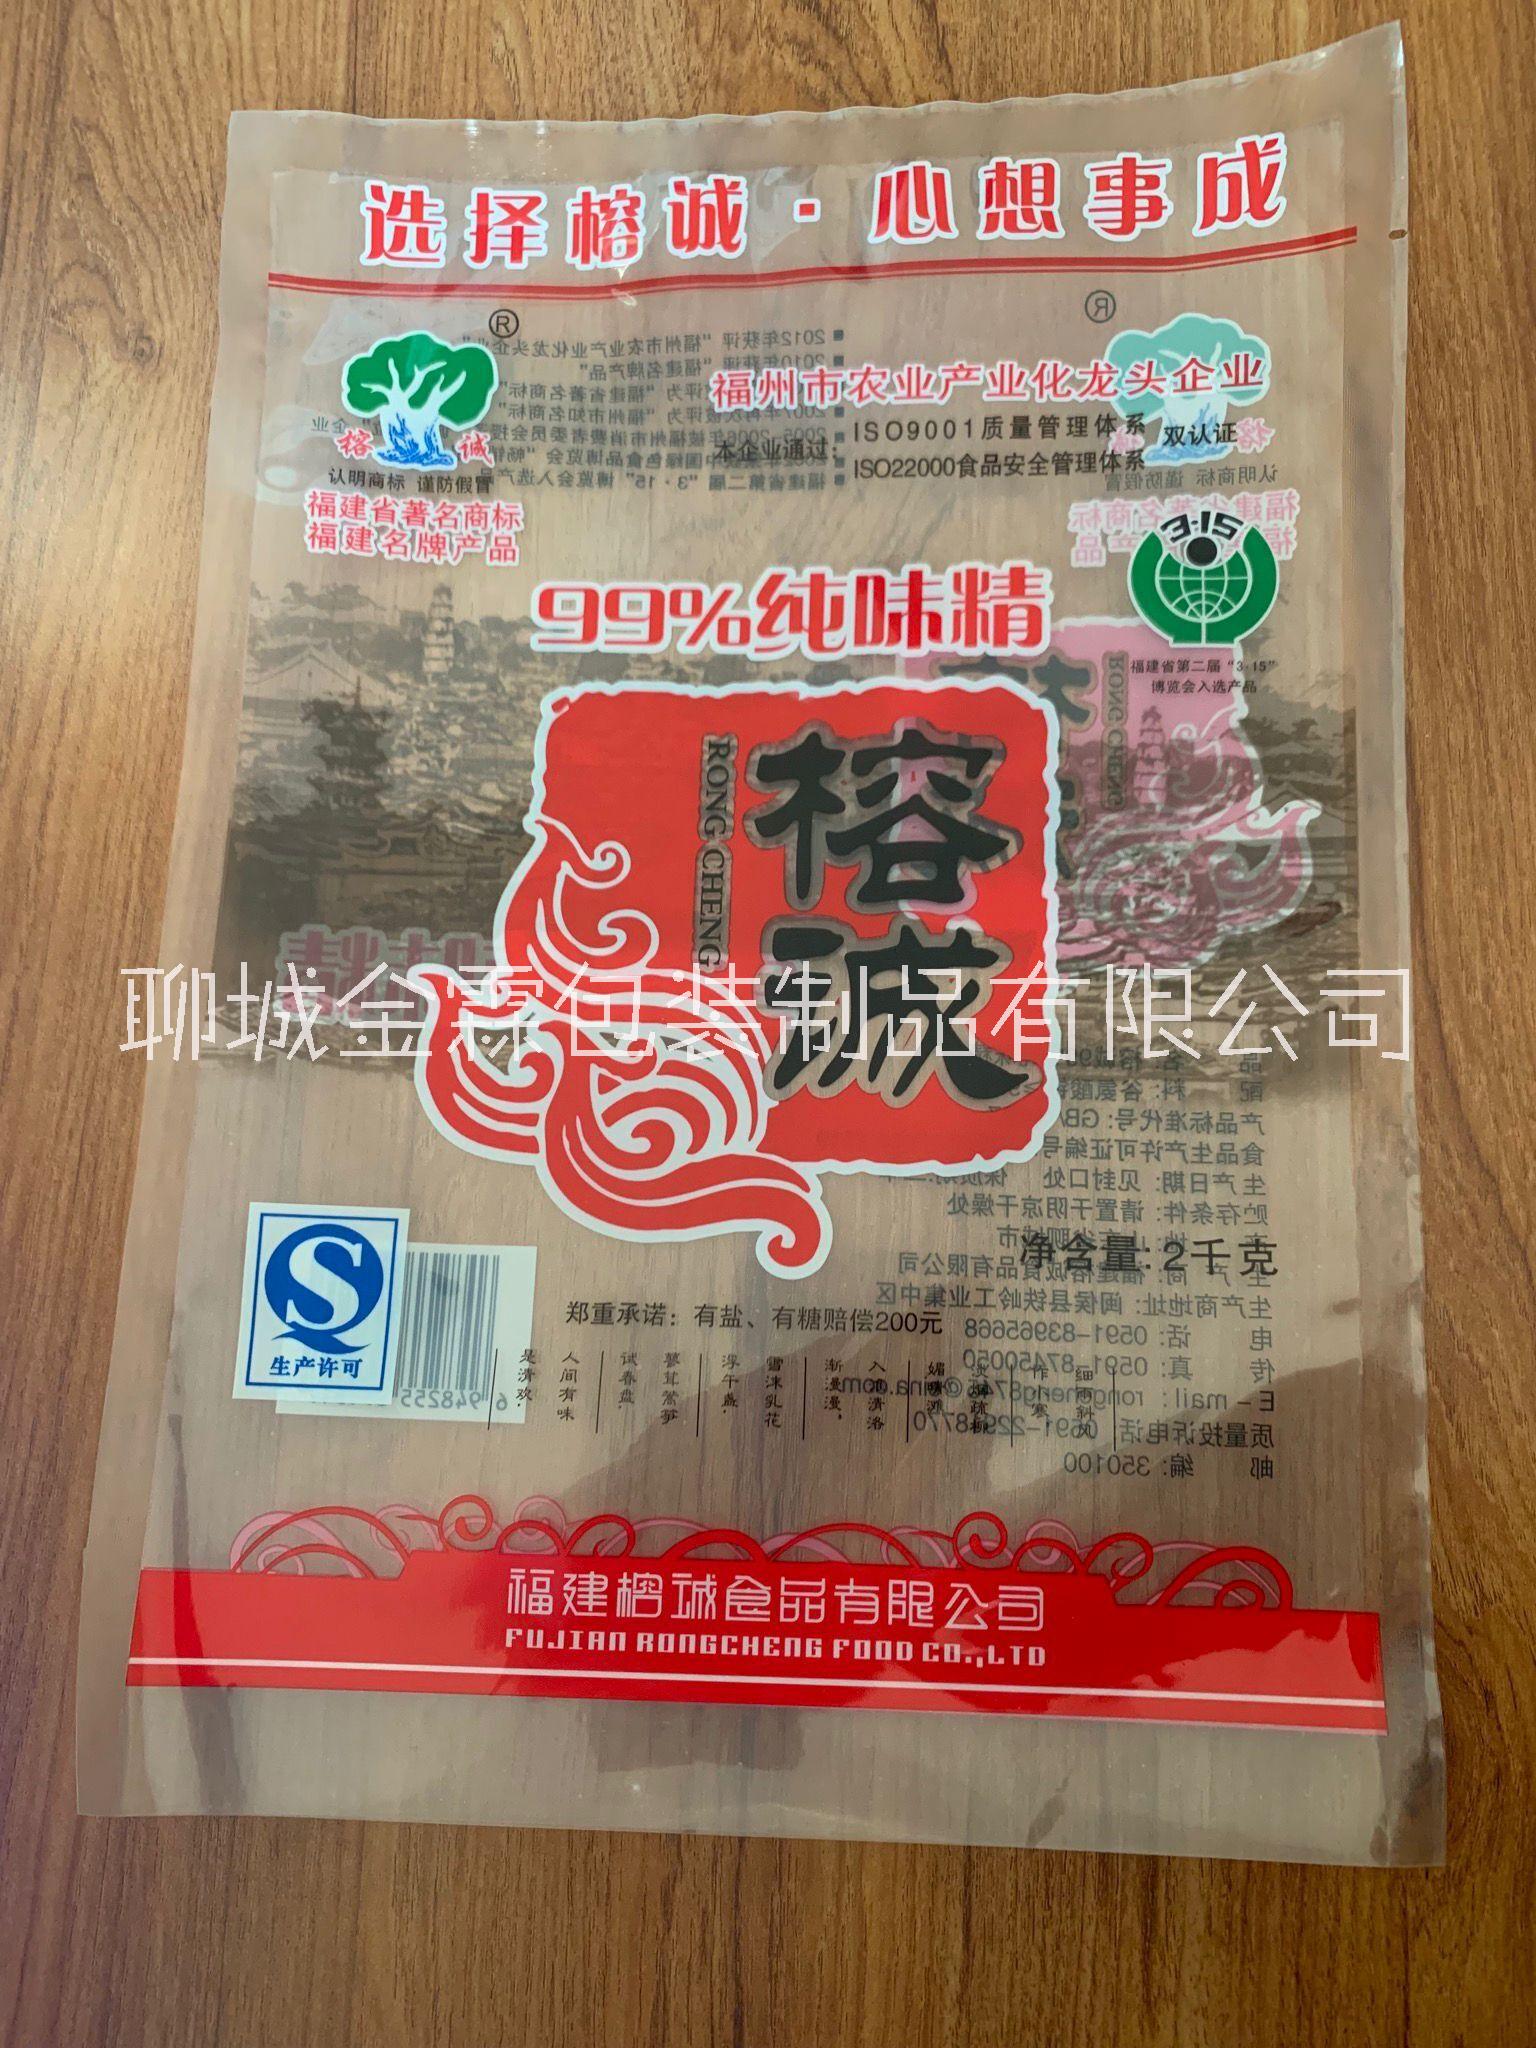 供应银川火锅底料包装袋/复合调料包装袋/花椒大料包装袋,可定制